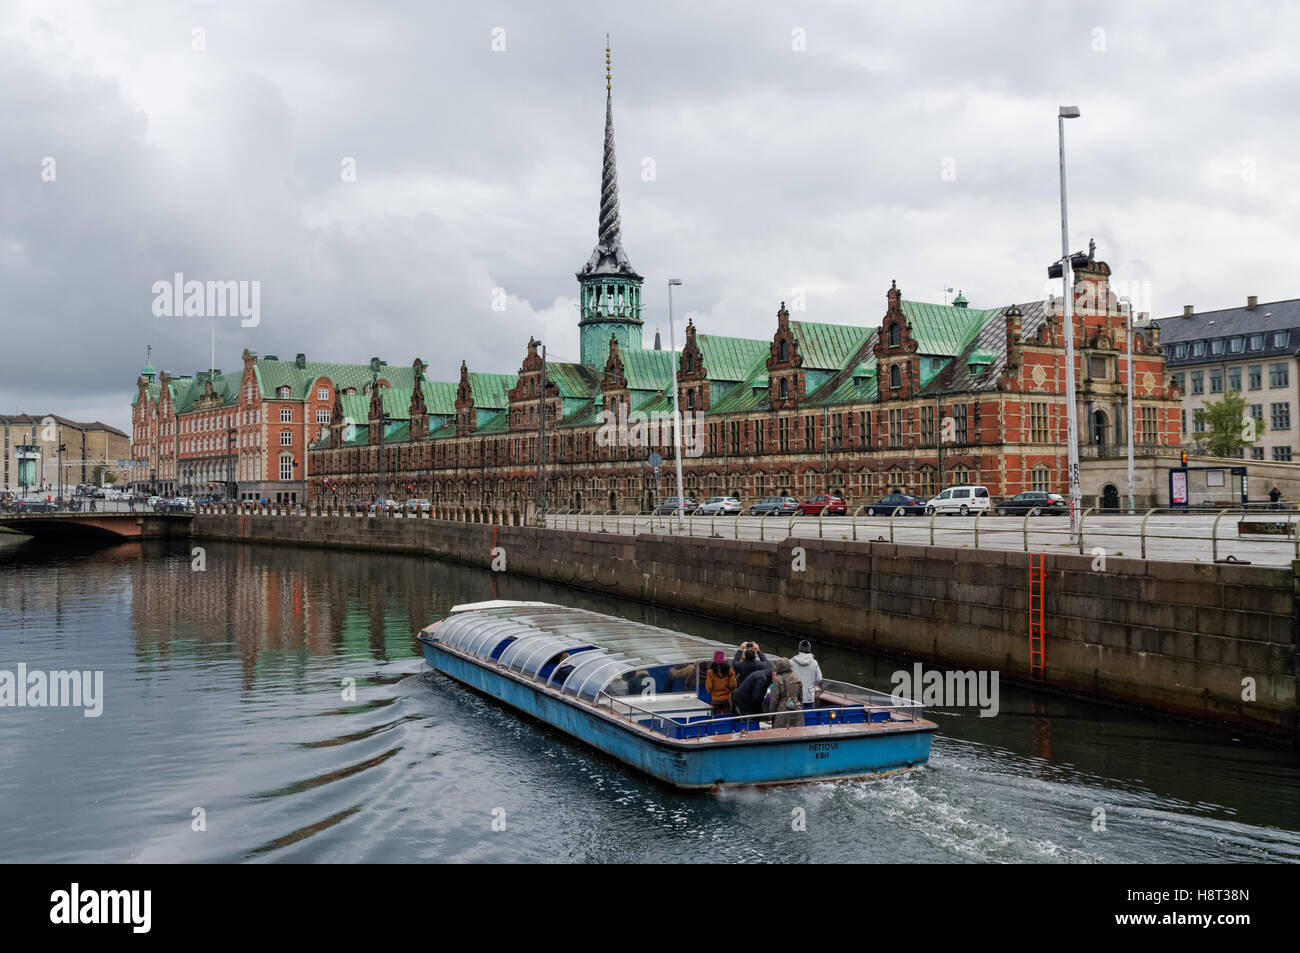 Tourist boat on Frederiksholm Canal in Copenhagen, Denmark Stock Photo